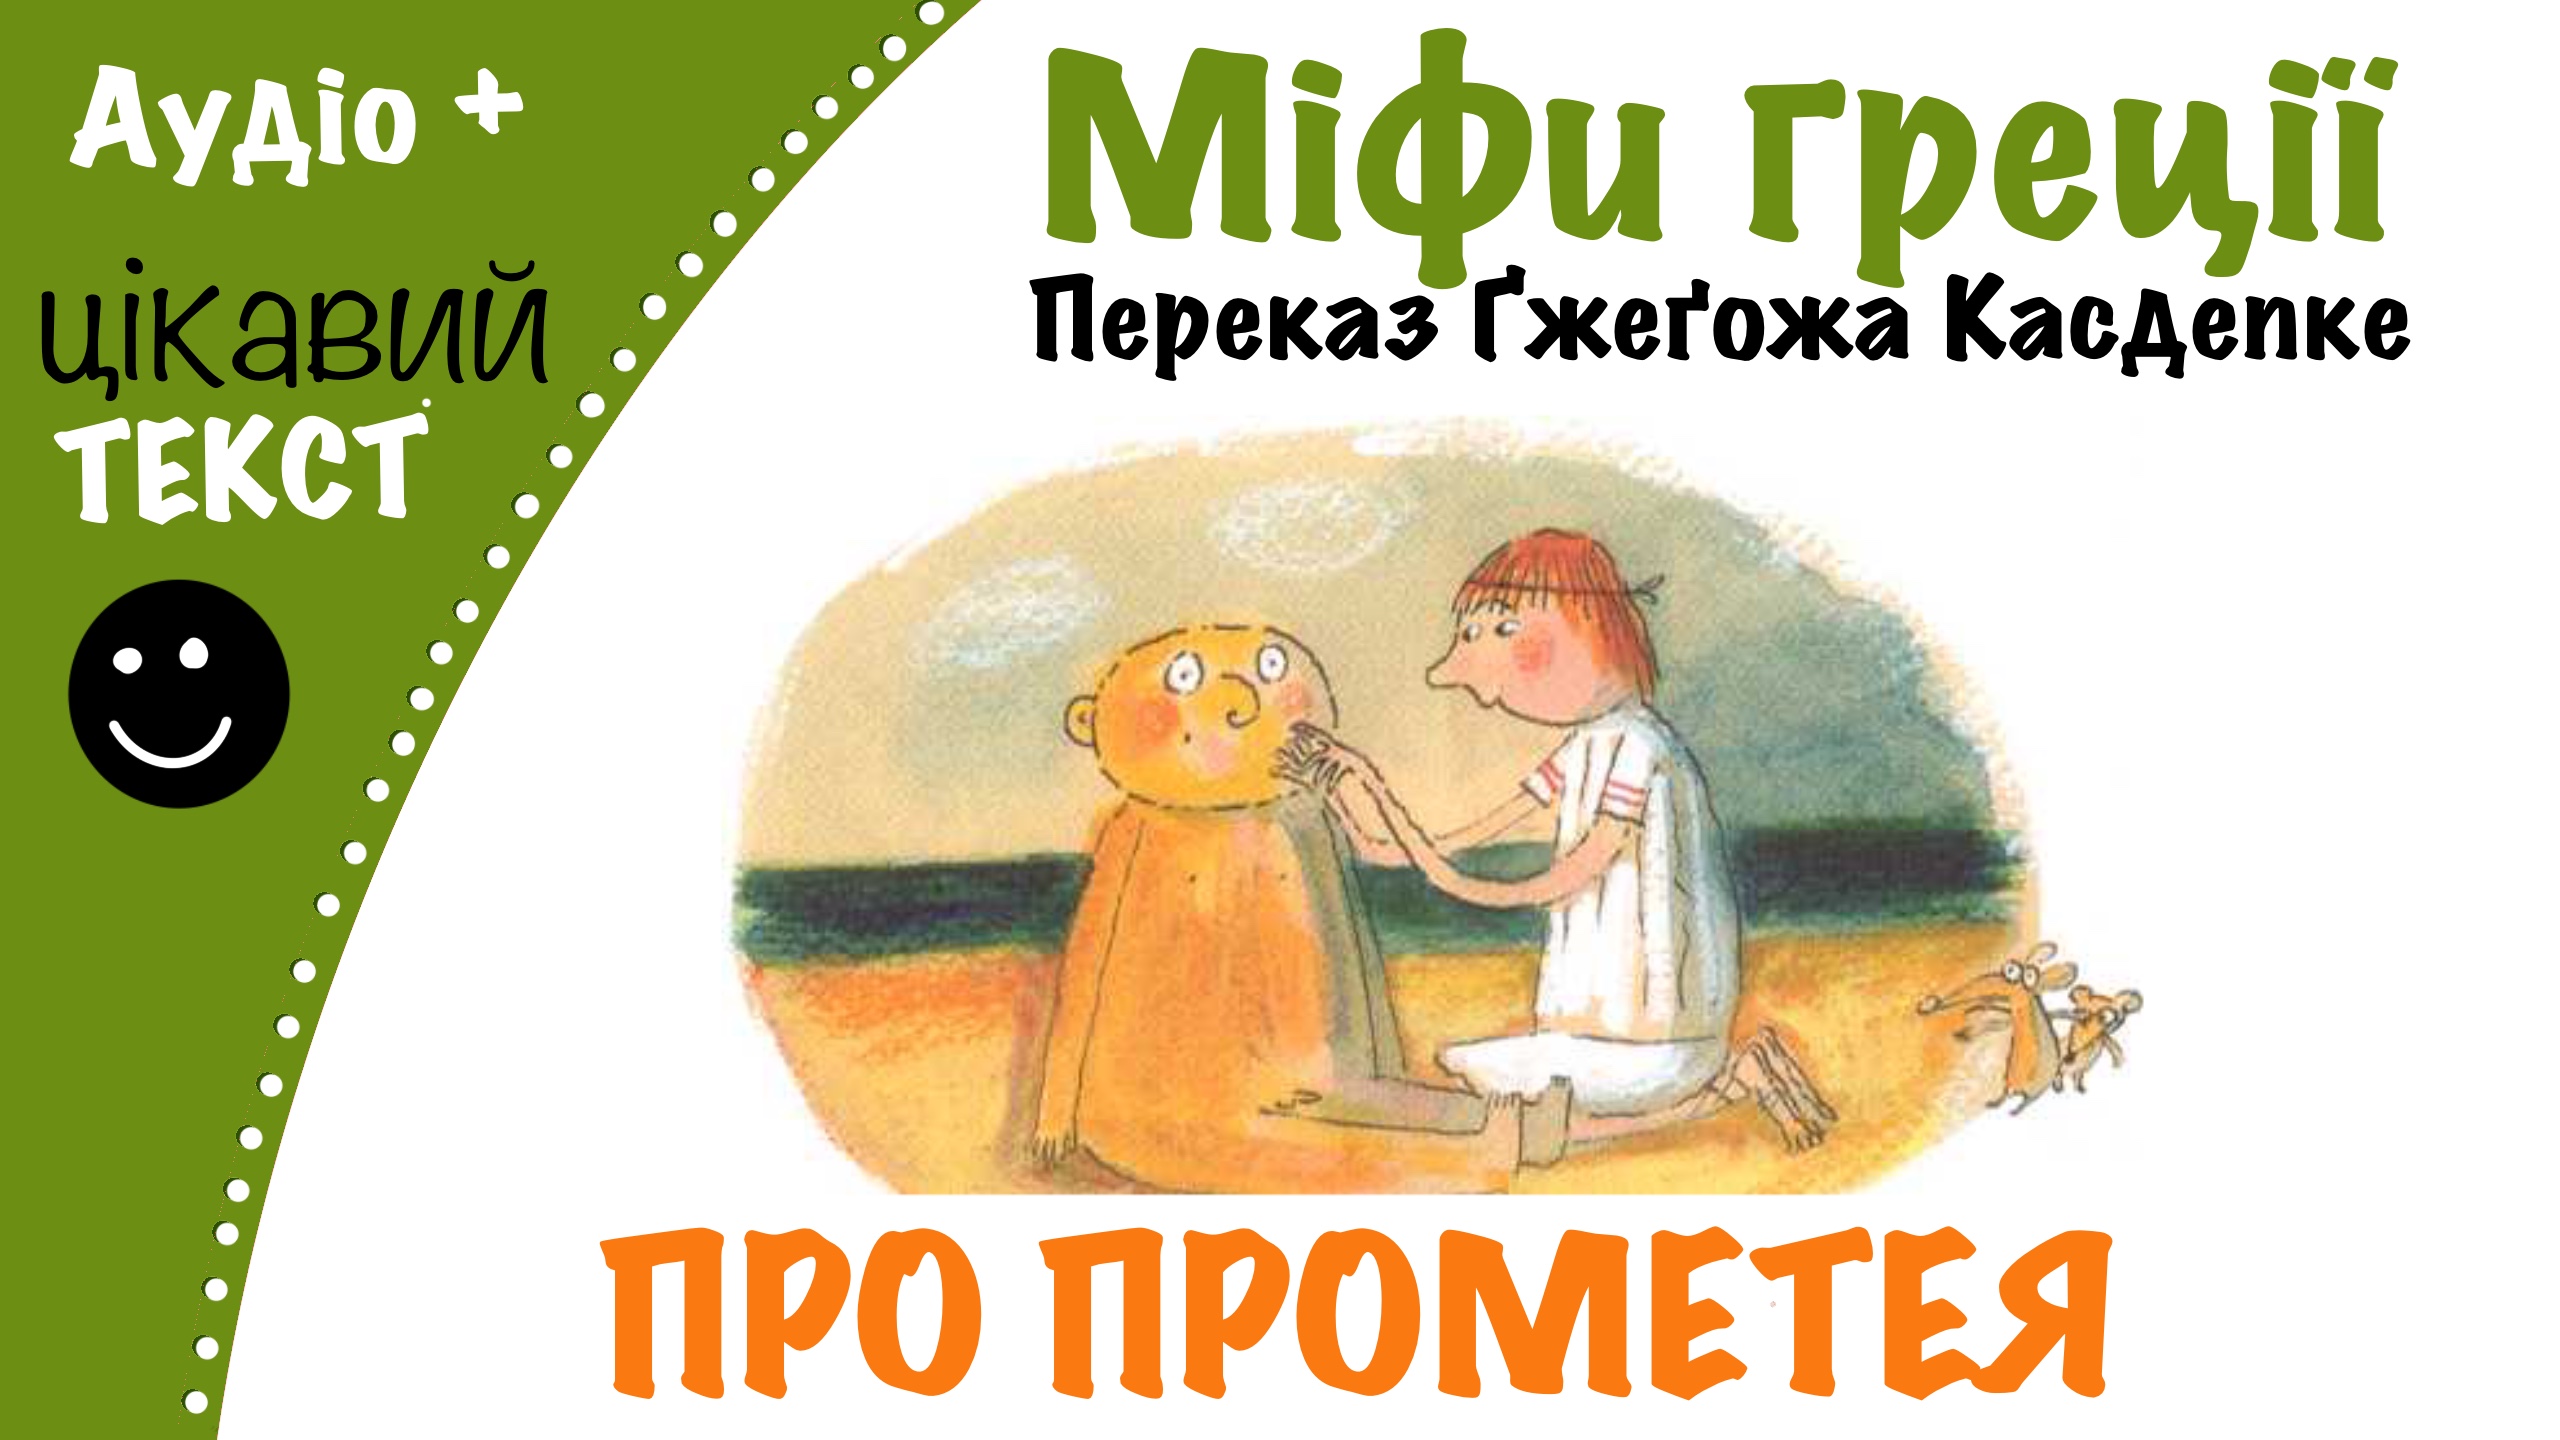 Перейти до: Грецький міф про Прометея. Переказ Ґжеґожа Касдепке